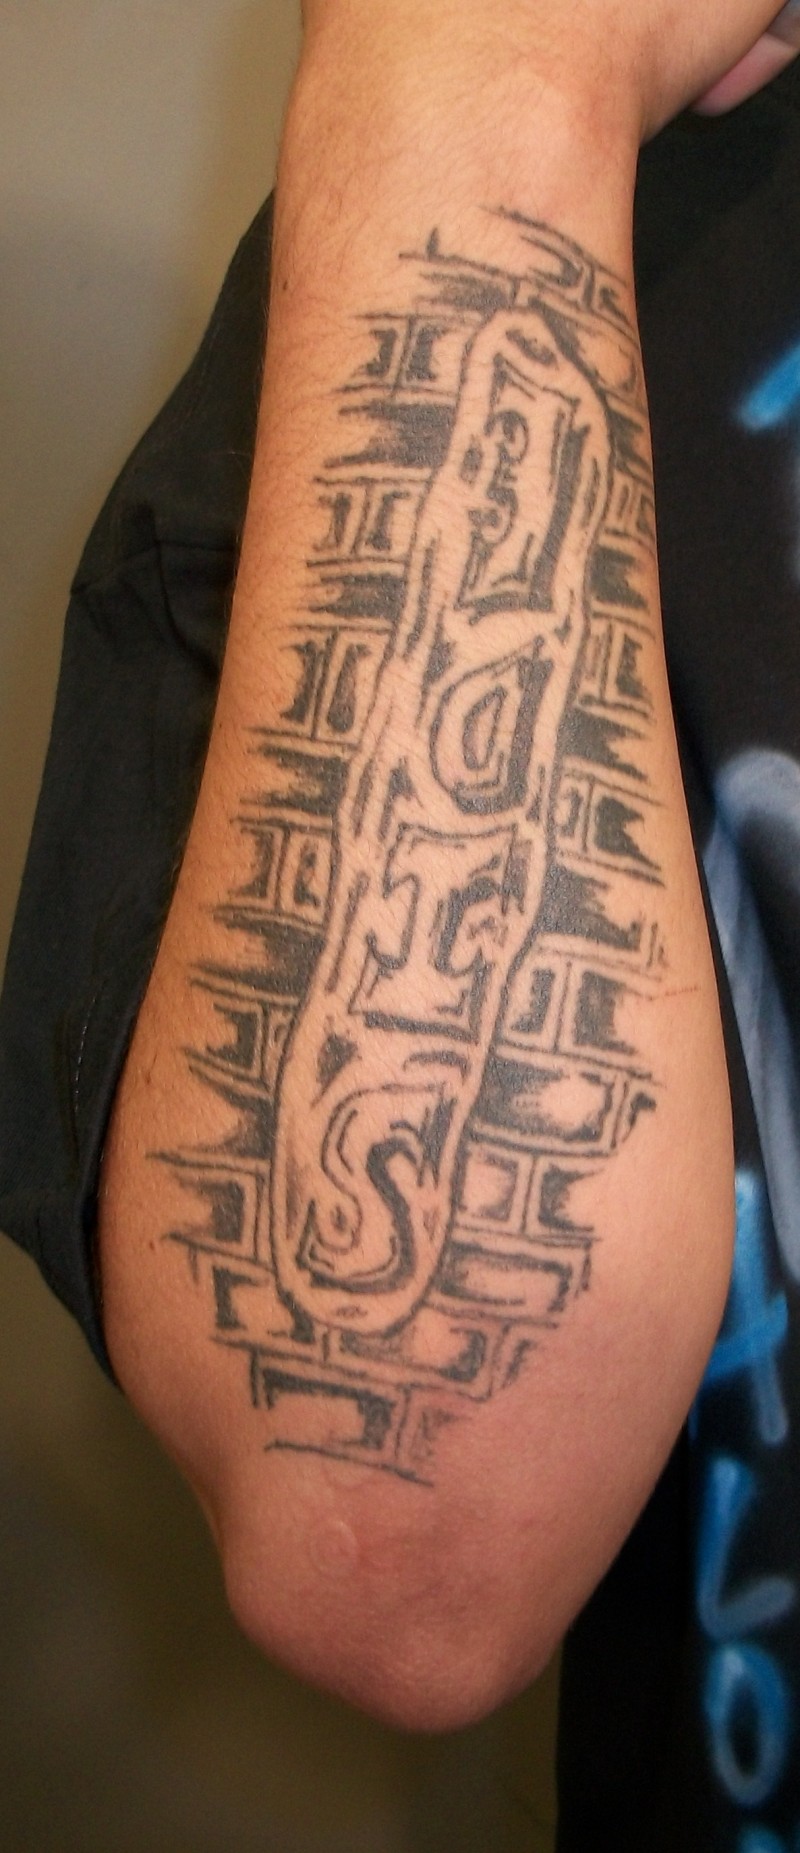 Tatuaje en el antebrazo, inscripción side en la pared de ladrillo